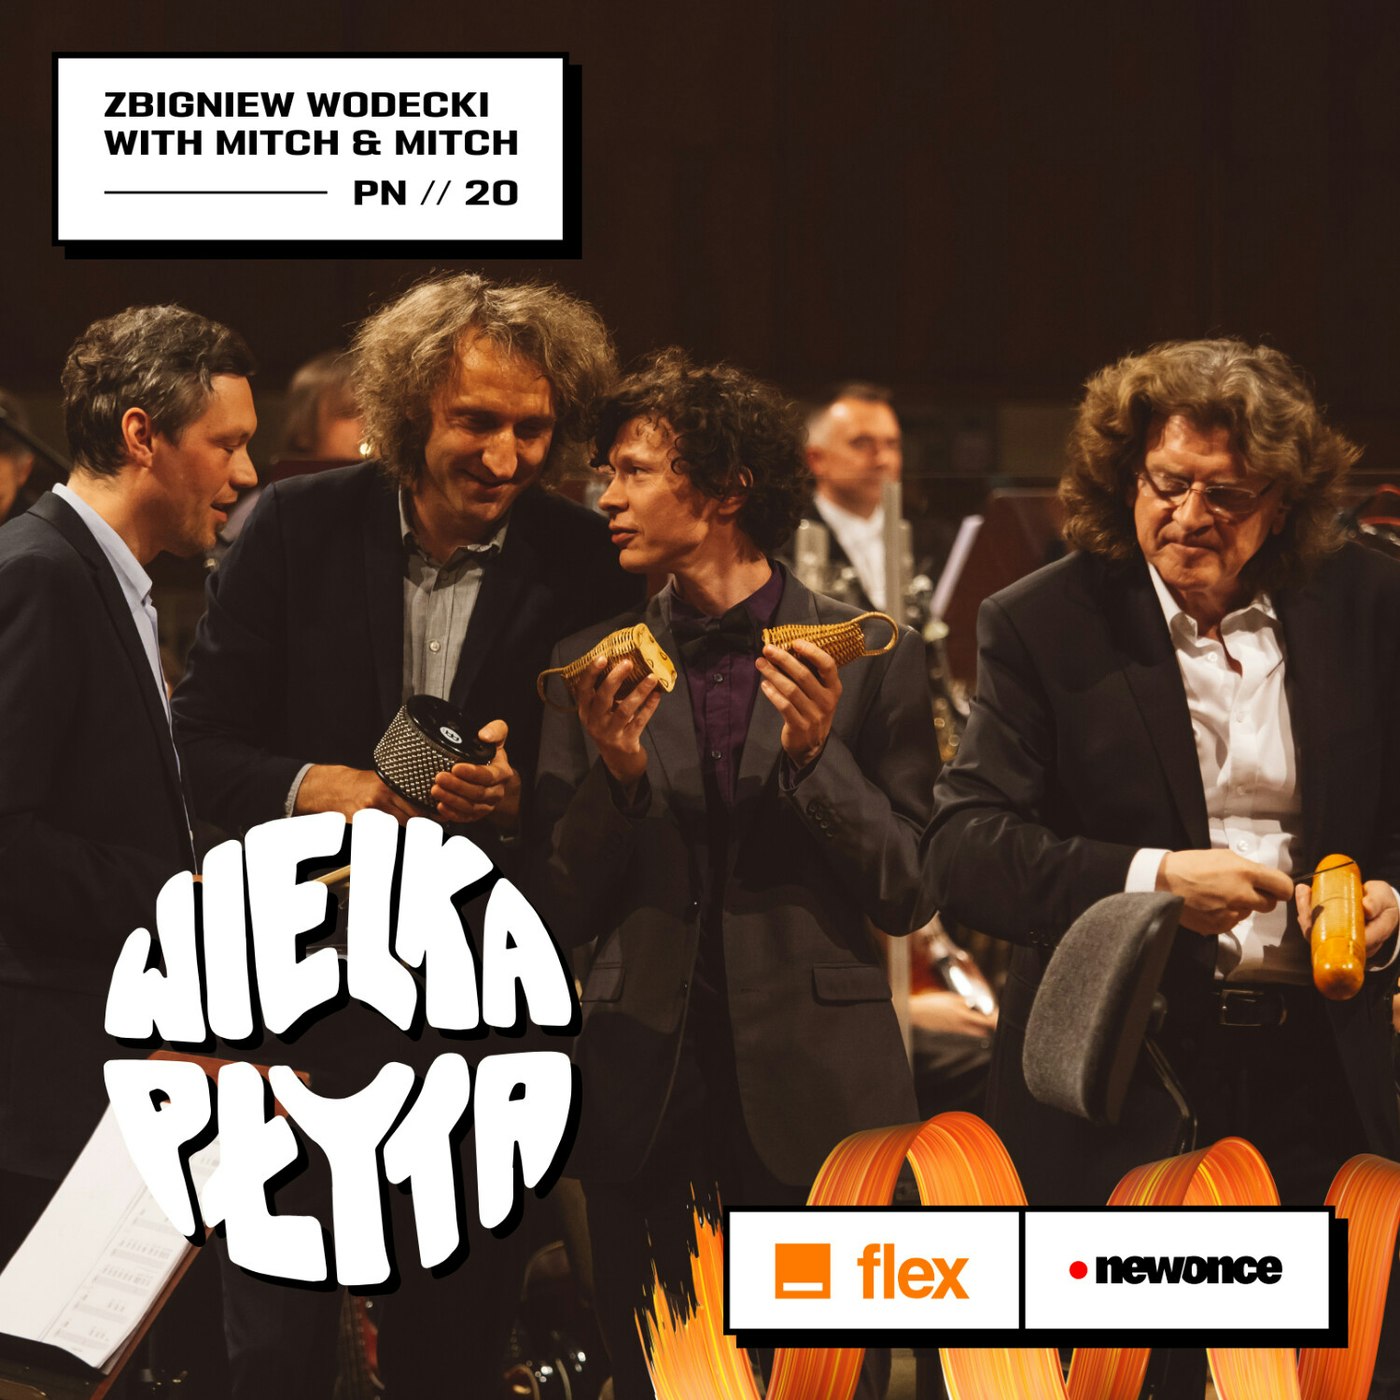 Wielka Płyta powered by Orange Flex 